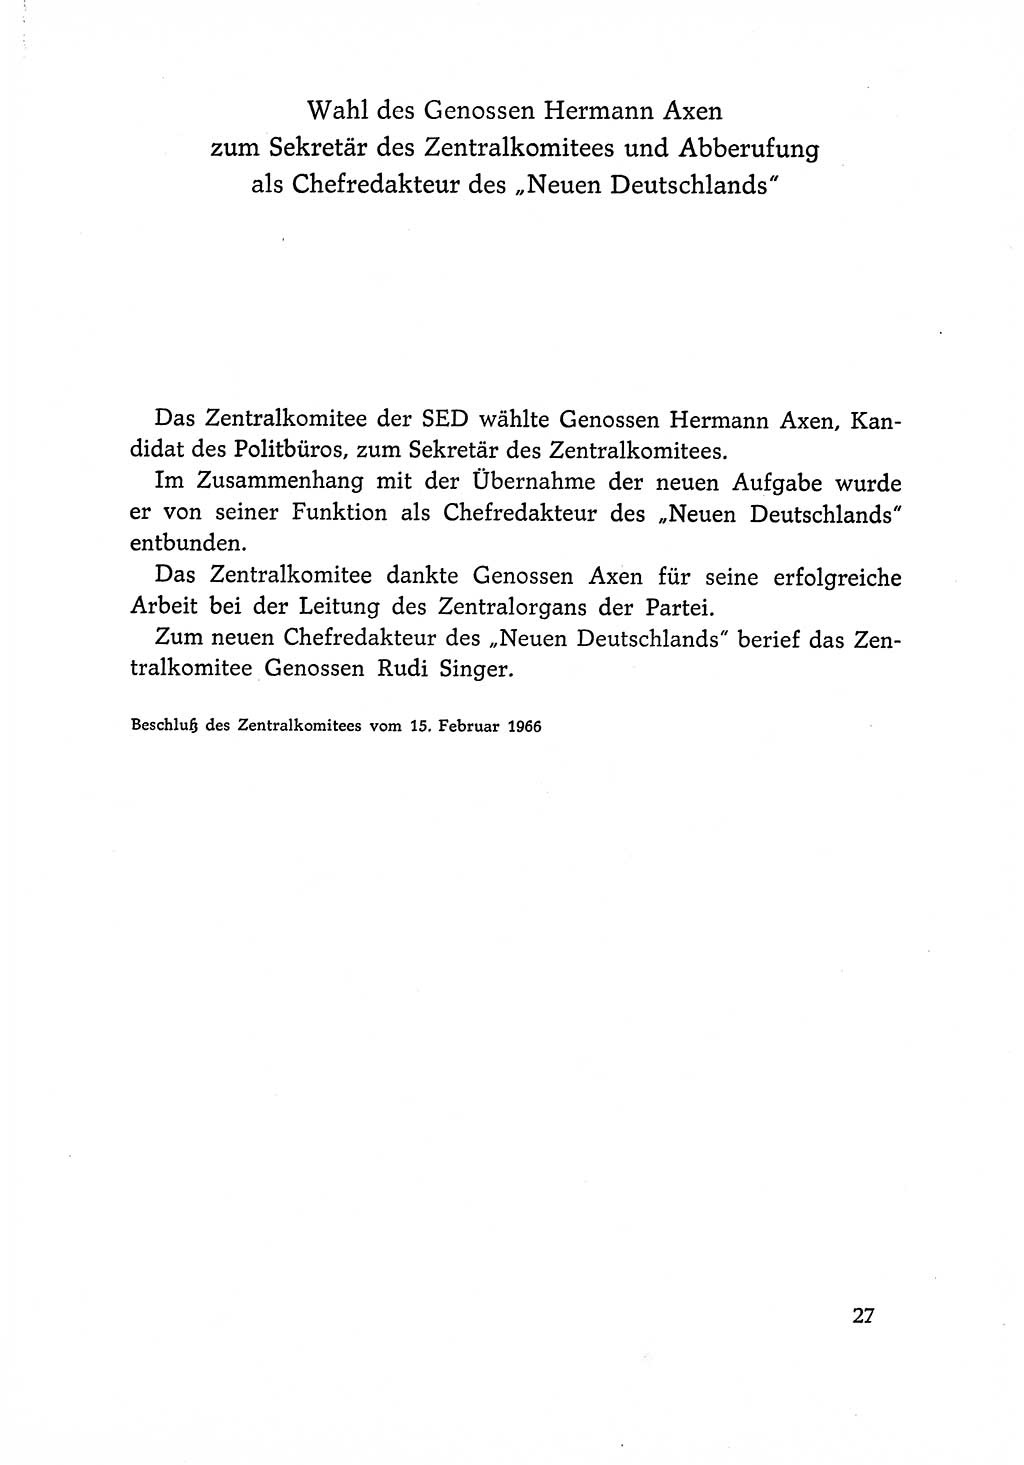 Dokumente der Sozialistischen Einheitspartei Deutschlands (SED) [Deutsche Demokratische Republik (DDR)] 1966-1967, Seite 27 (Dok. SED DDR 1966-1967, S. 27)